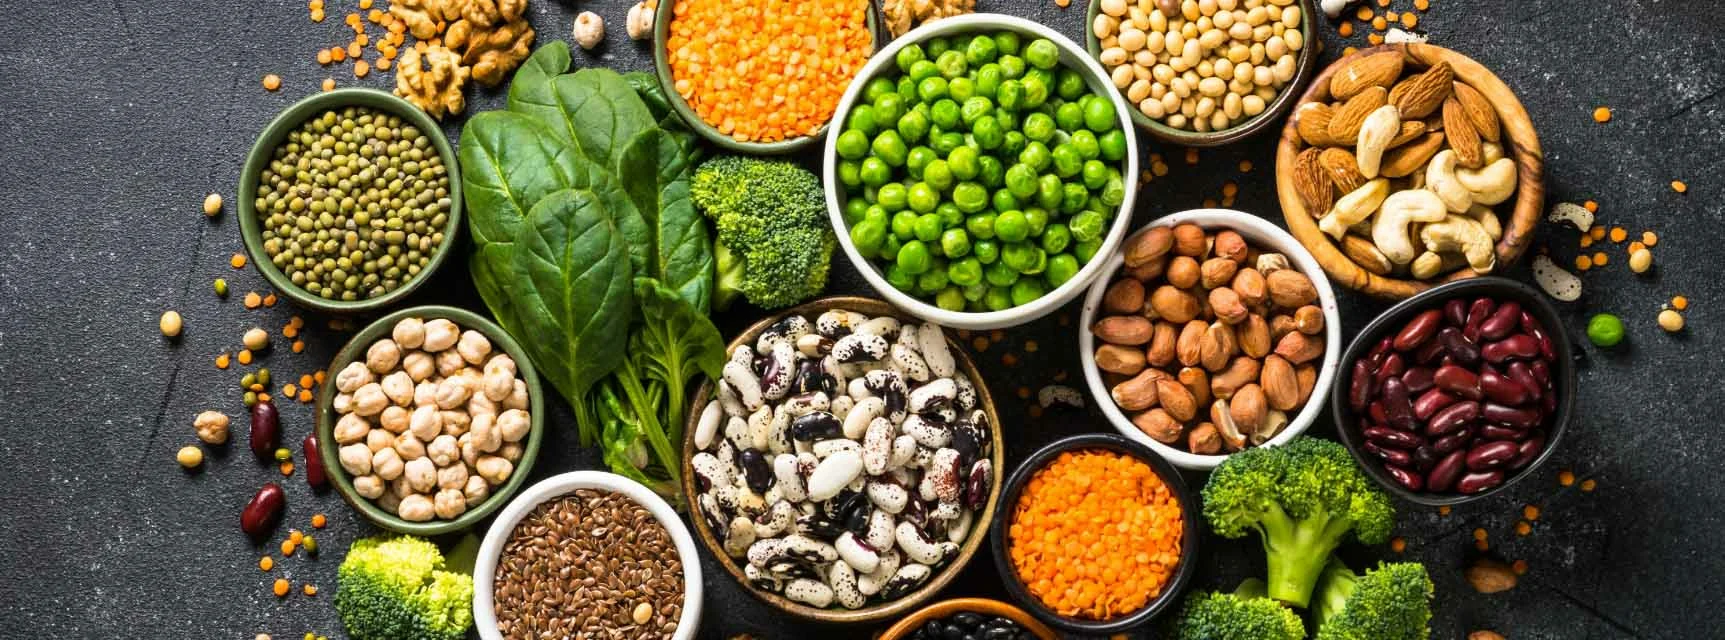 Las proteínas vegetales pueden combinarse para alcanzar los índices adecuados.